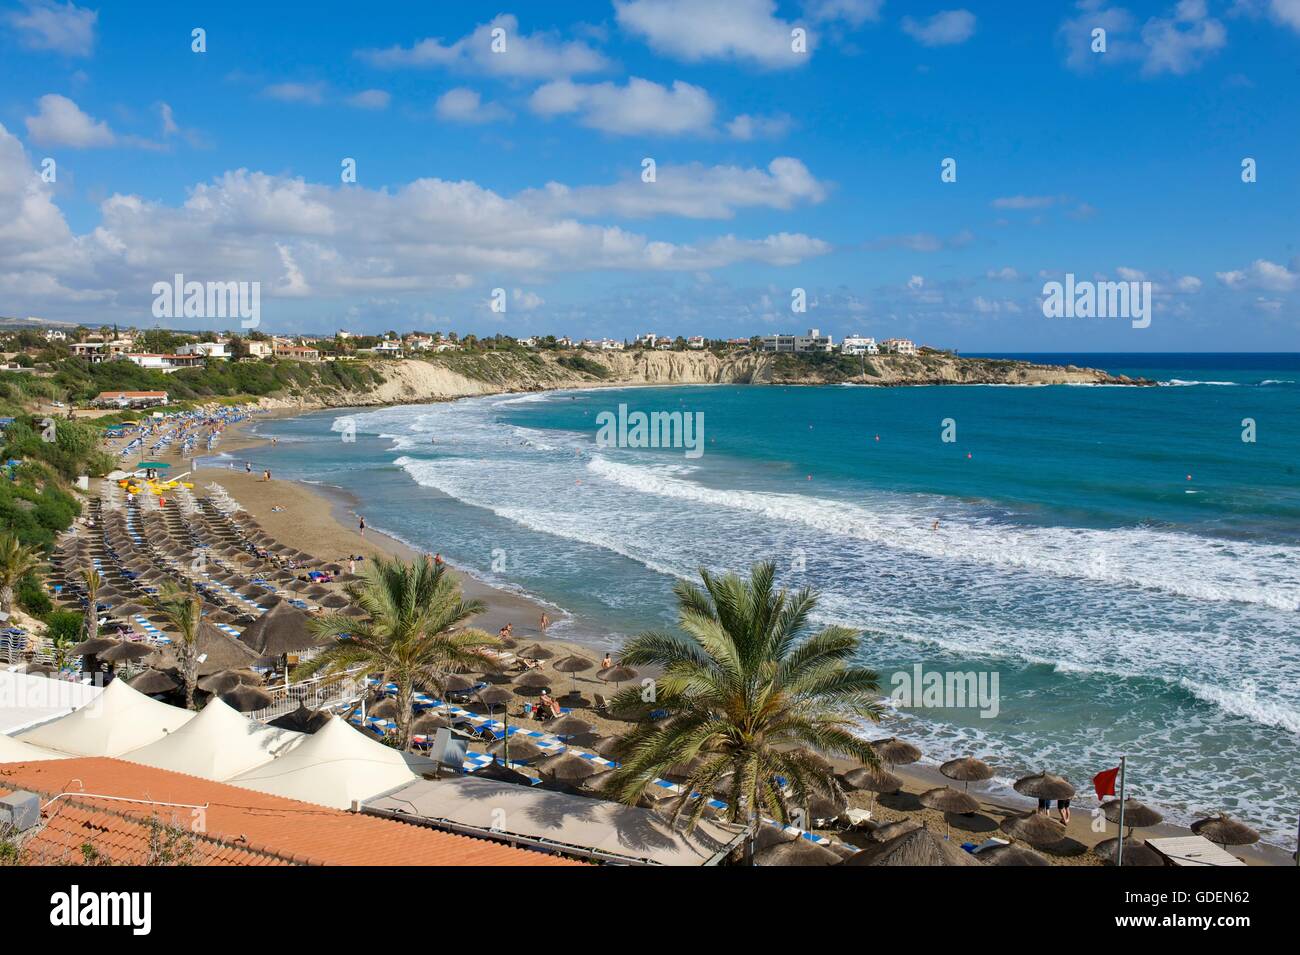 La plage de Coral Bay, Paphos, République de Chypre Banque D'Images